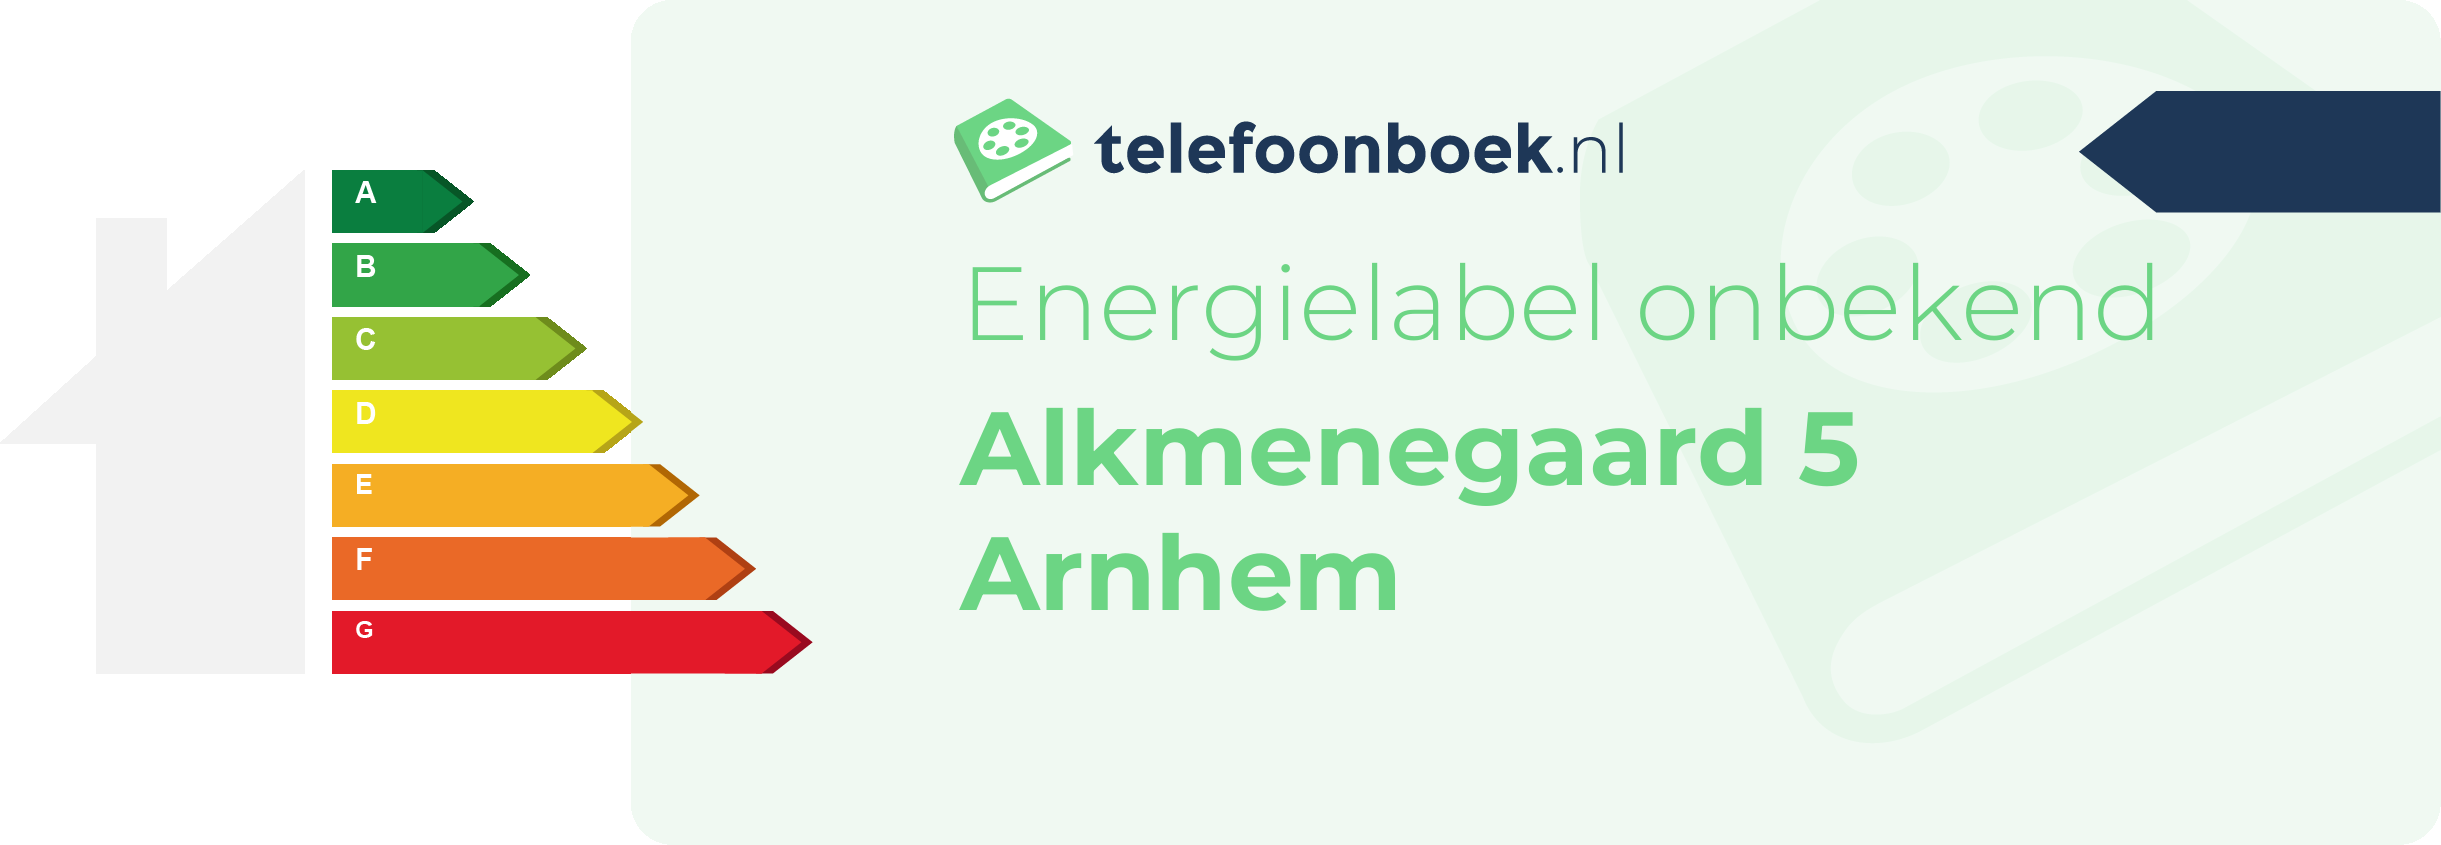 Energielabel Alkmenegaard 5 Arnhem